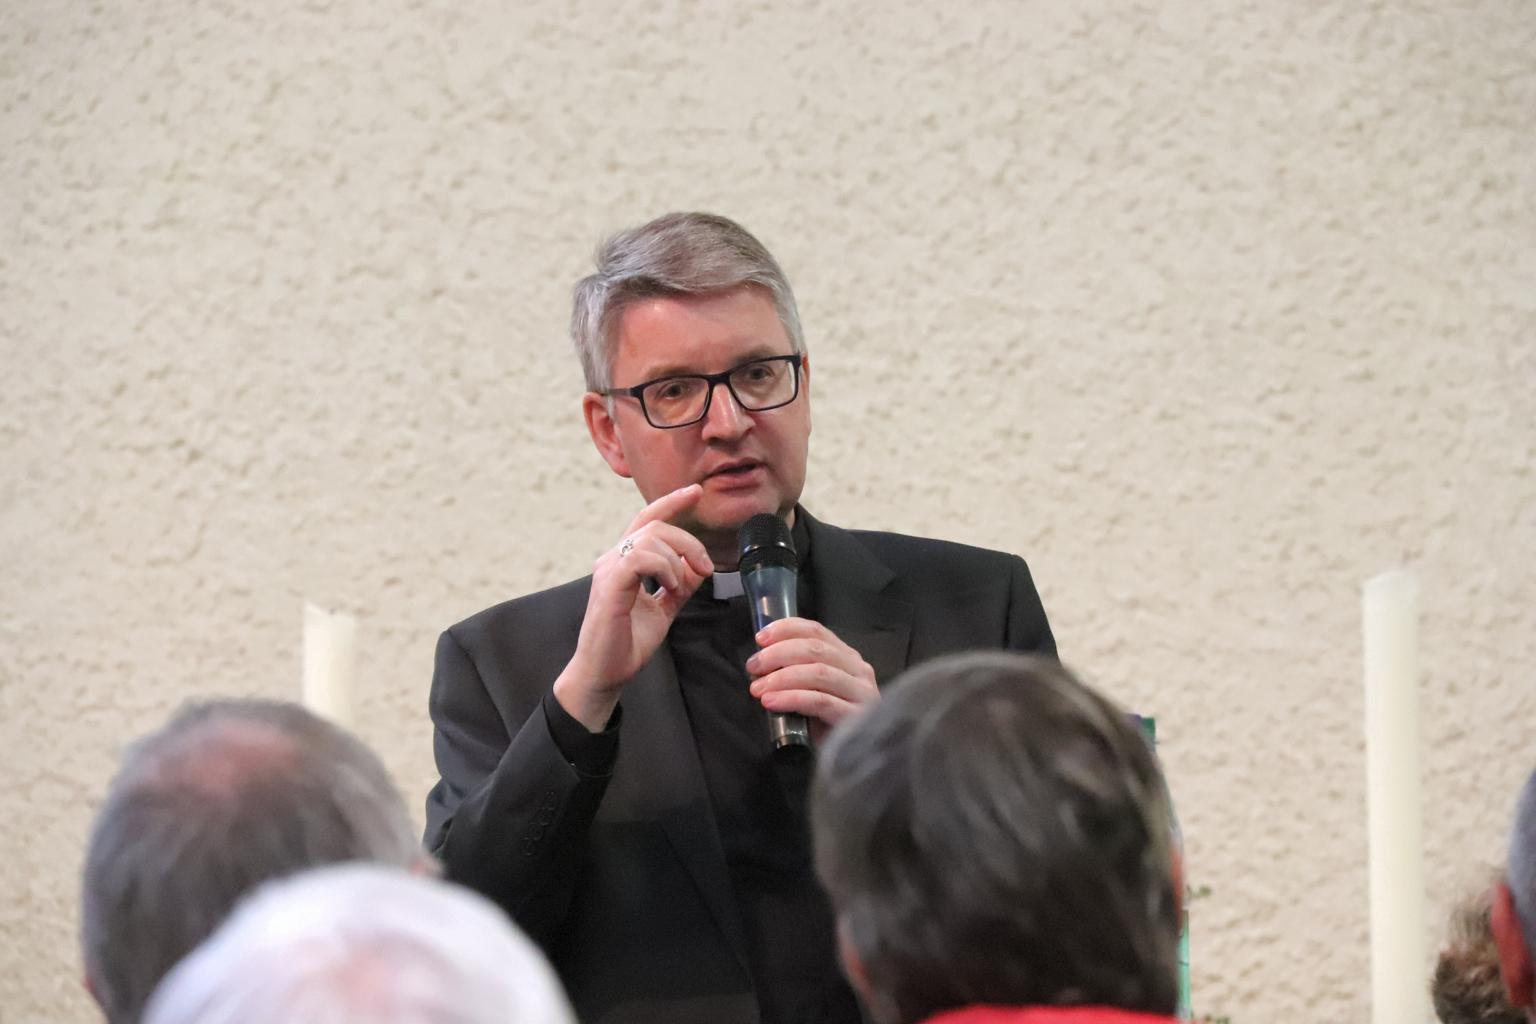 Darmstadt, 9.3.2019: Bischof Peter Kohlgraf erläuterte die Orientierungshilfe der Deutschen Bischofskonferenz. (c) Bistum Mainz / Matschak